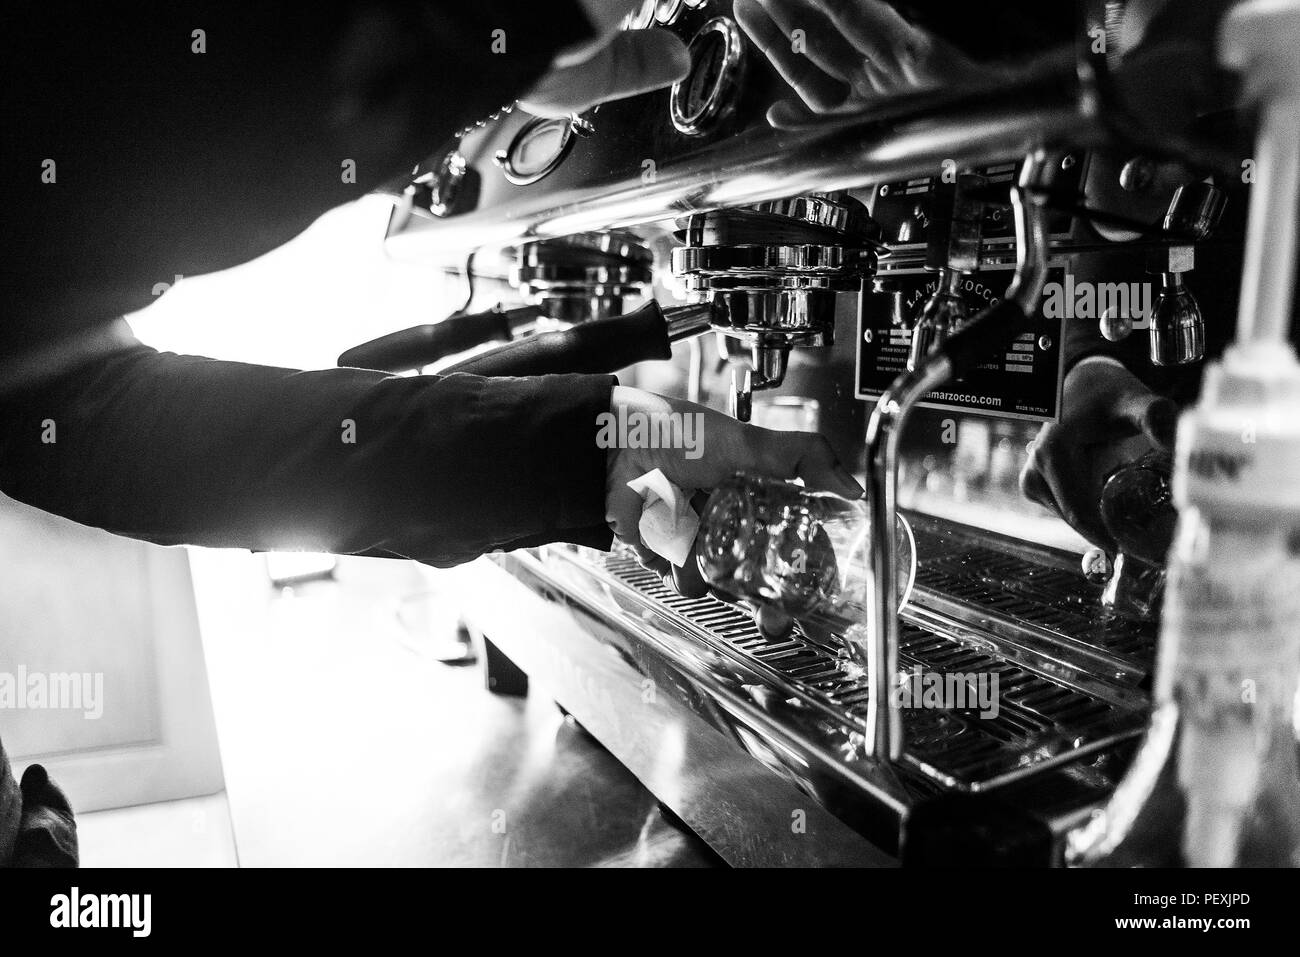 La preparazione di caffè espresso BW in bianco e nero close up dettaglio con caffetteria moderna macchina e bicchieri Foto Stock